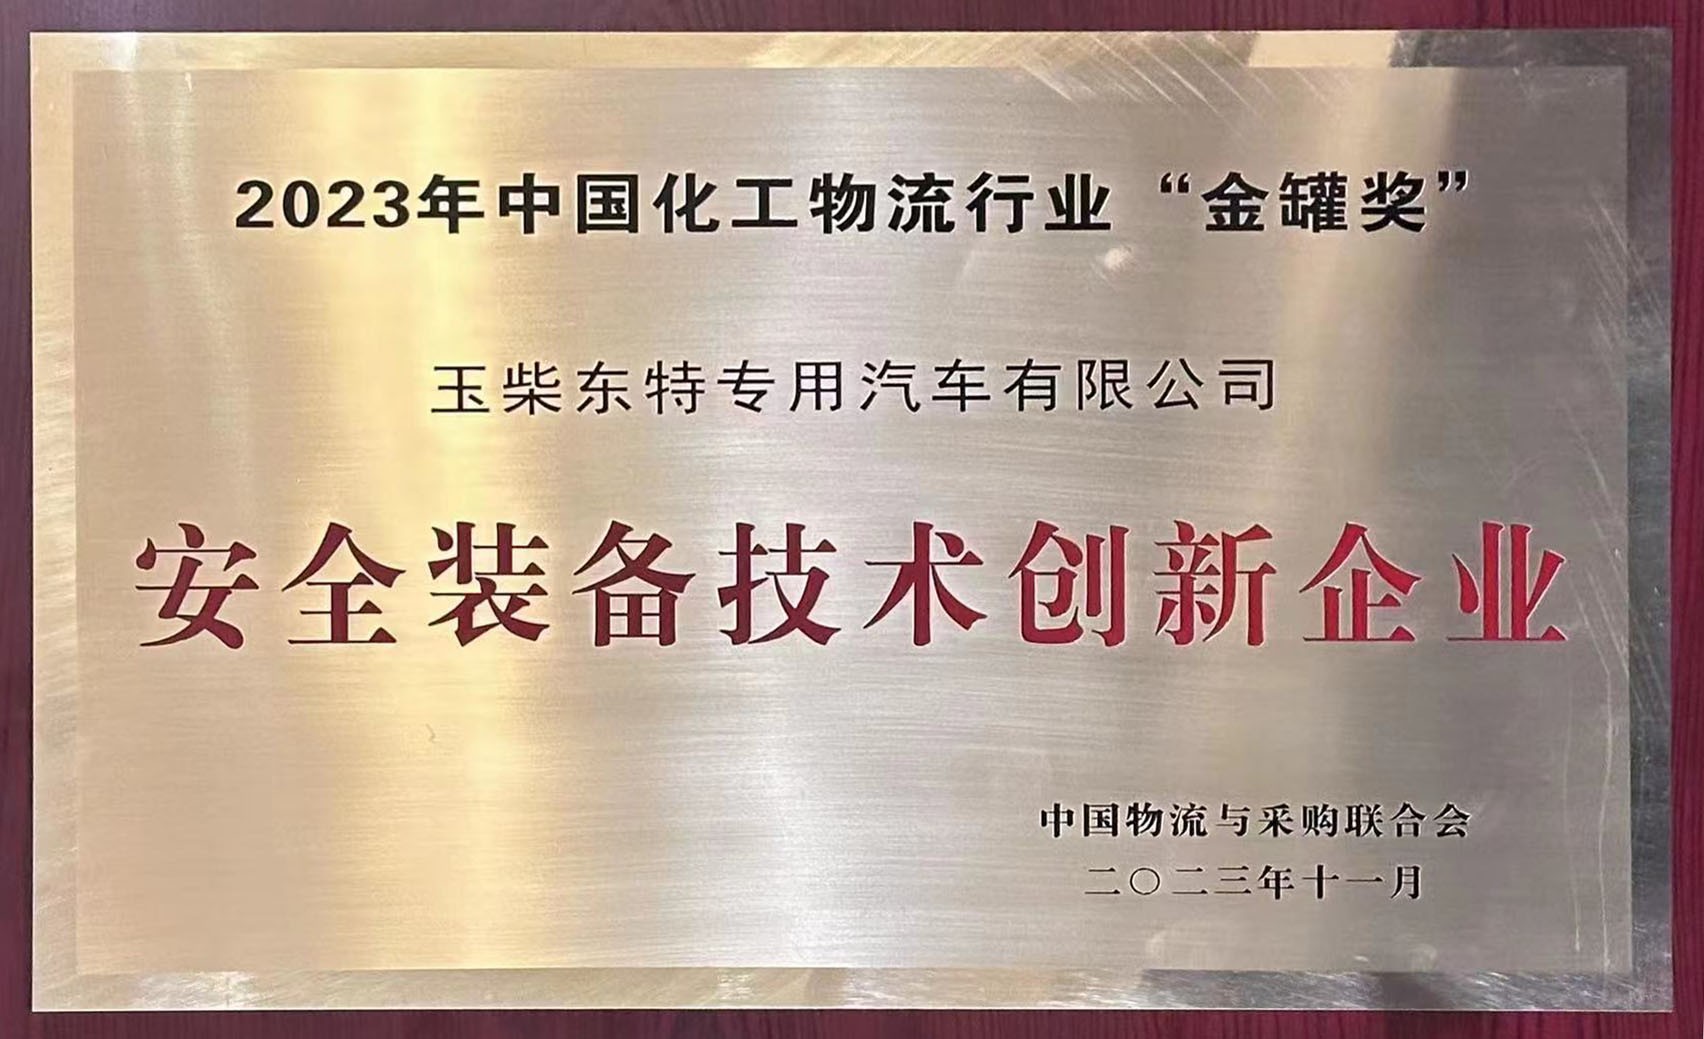 玉柴东特荣获2023年中国化工物流行业“金罐奖”安全装备技术创新企业